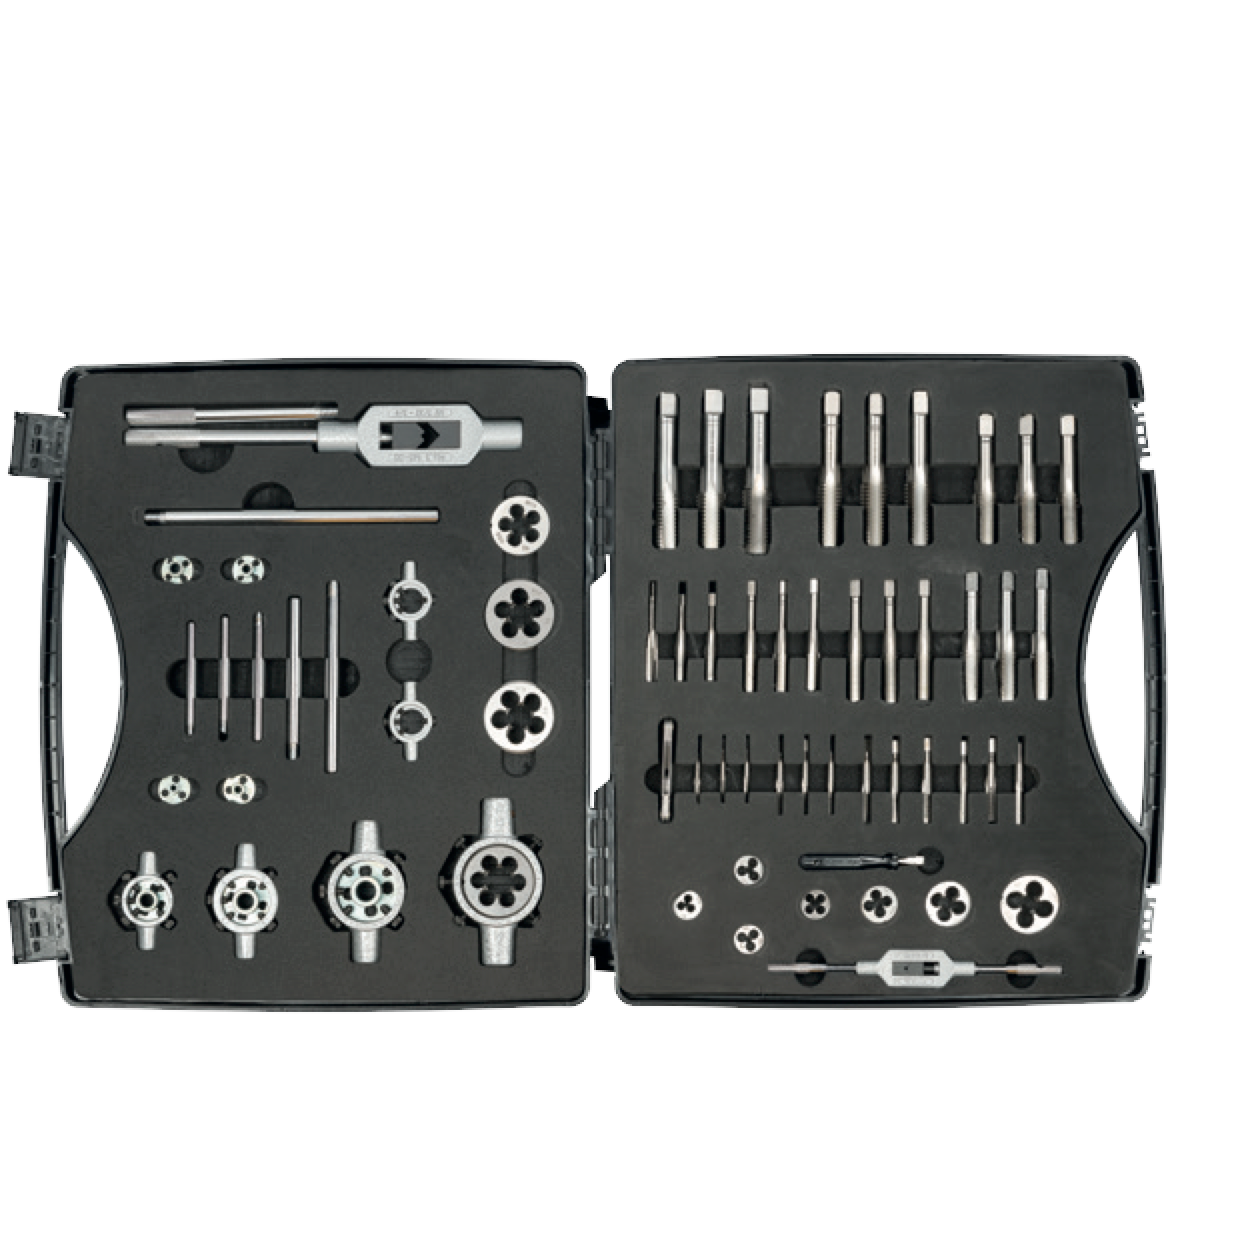 ELORA 1365-SF Thread Cutter Set Assortment (ELORA Tools) - Premium Thread Cutter Set from ELORA - Shop now at Yew Aik.